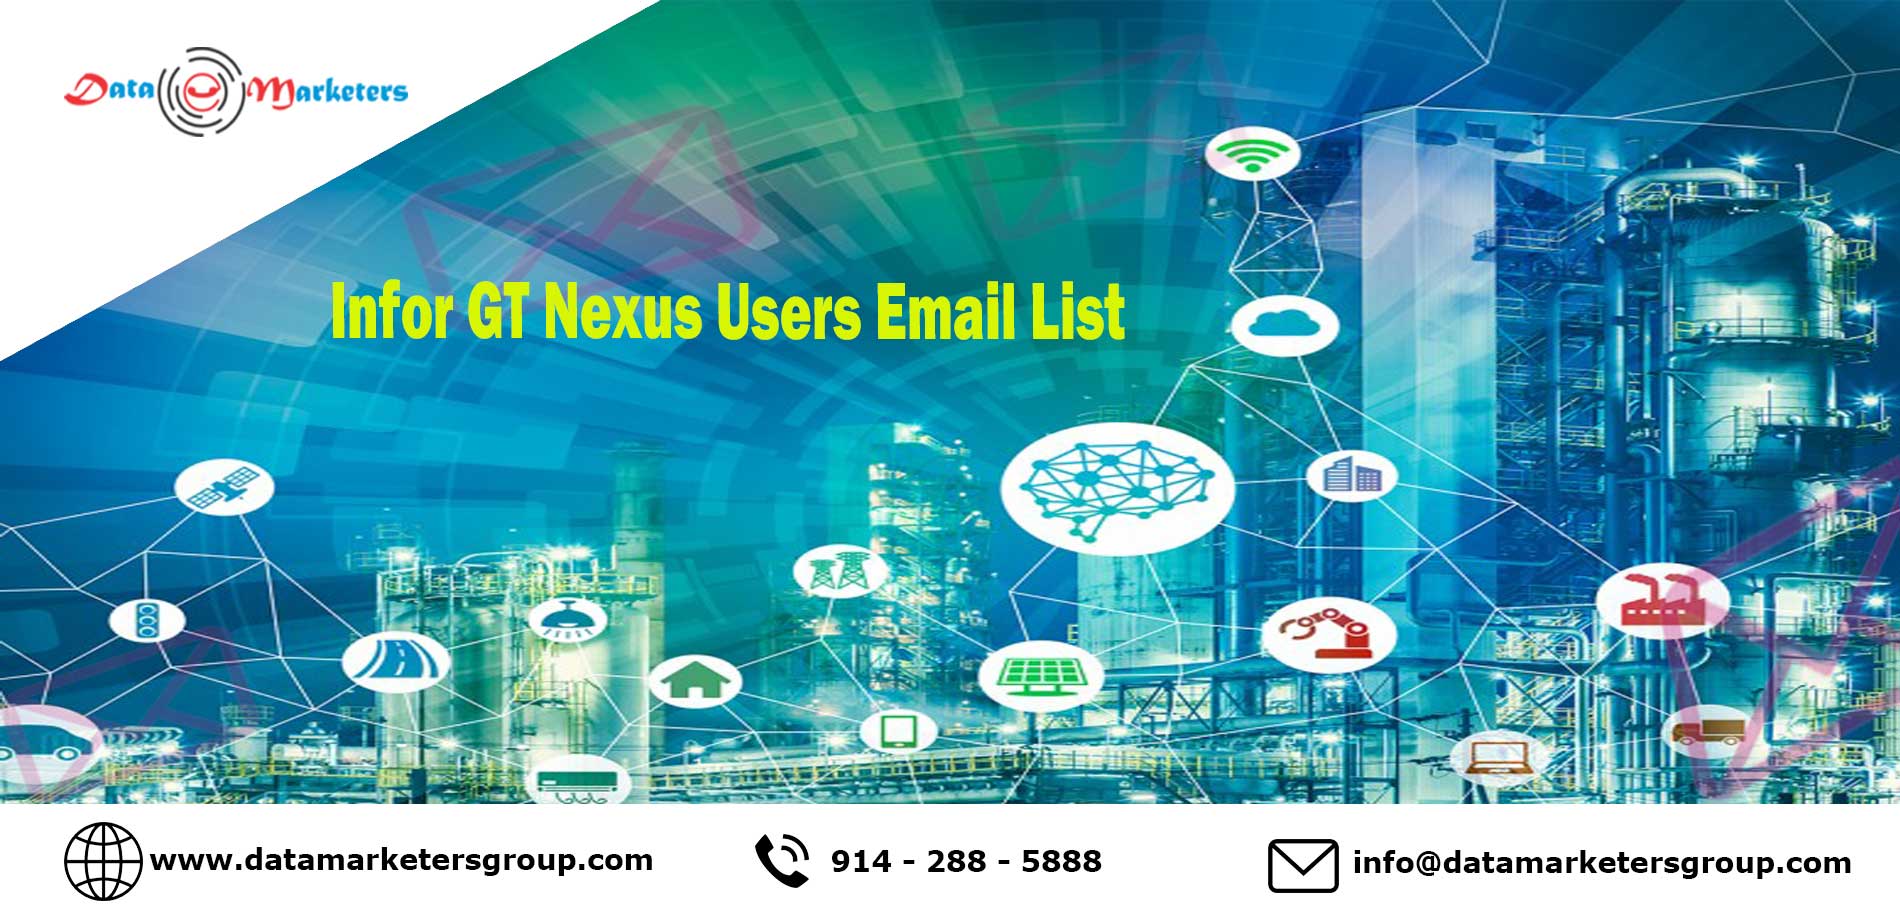 Infor GT Nexus Users List | Infor GT Nexus Users Email List | List of Companies Using Infor GT Nexus